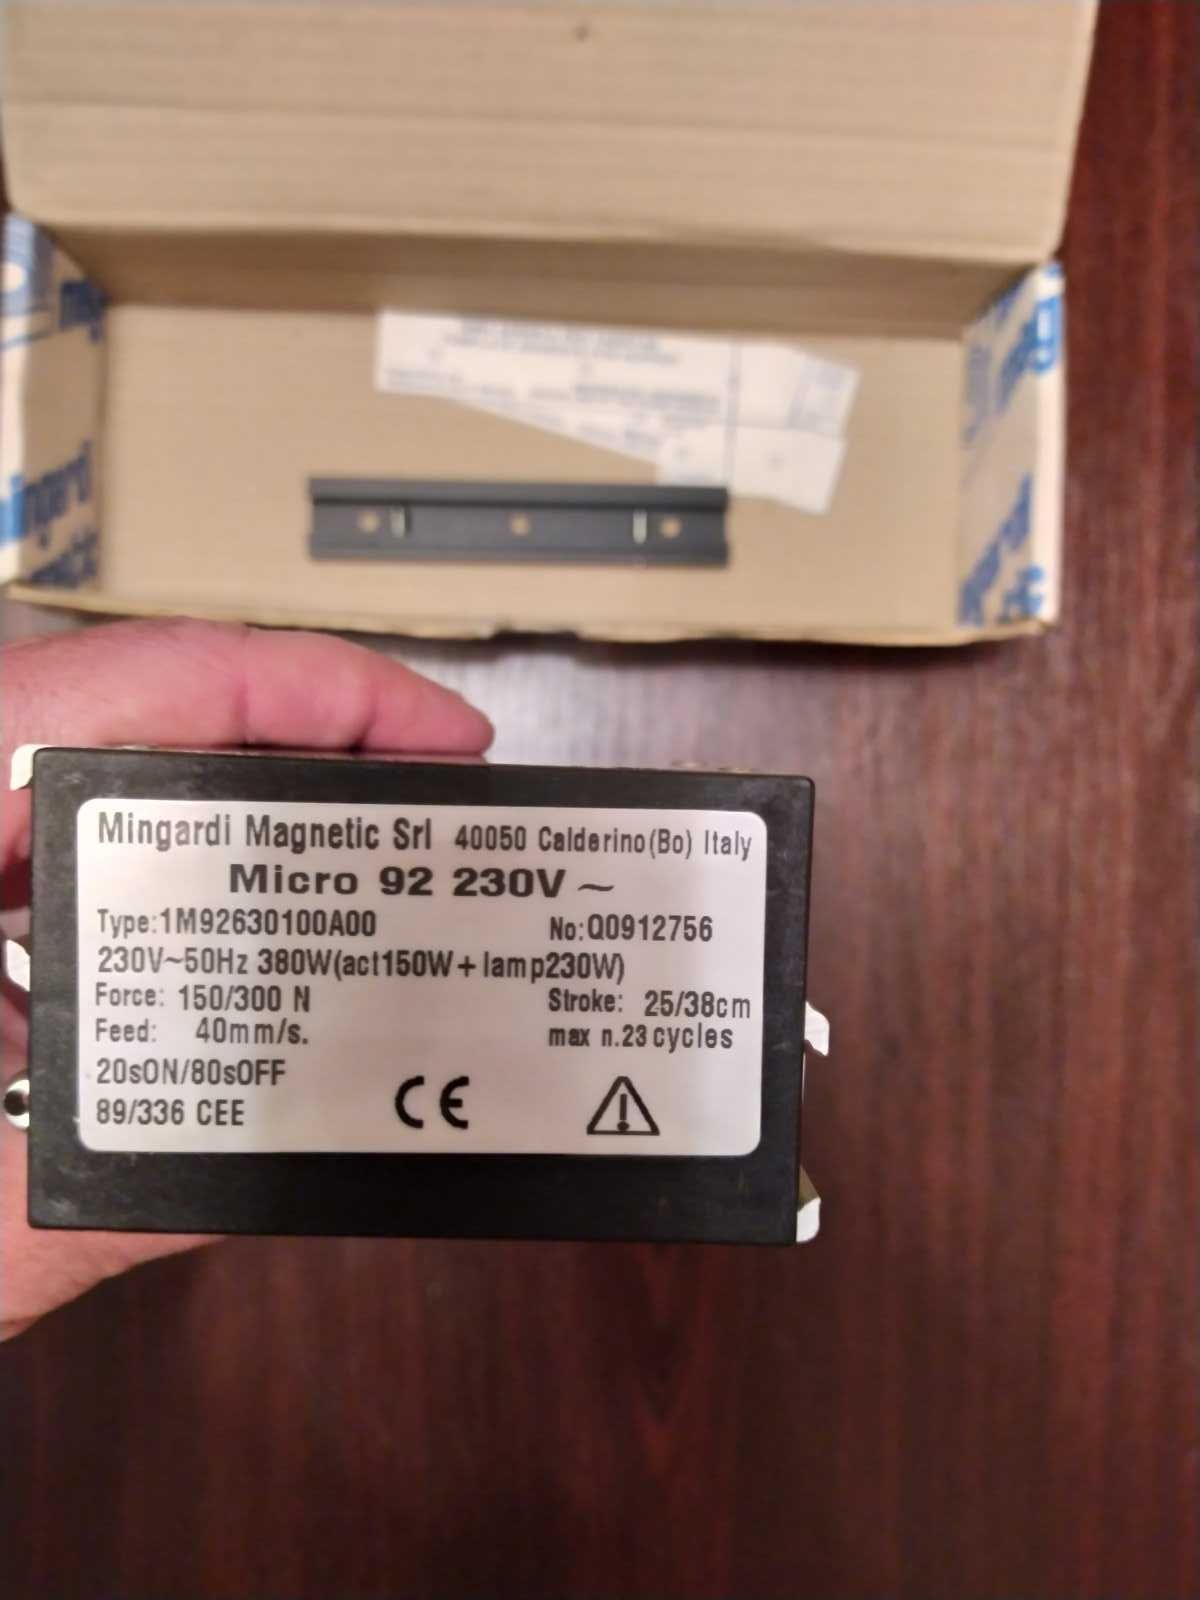 Фрамужний електровідкривач Micro 92 230V Mingardi Magnetic